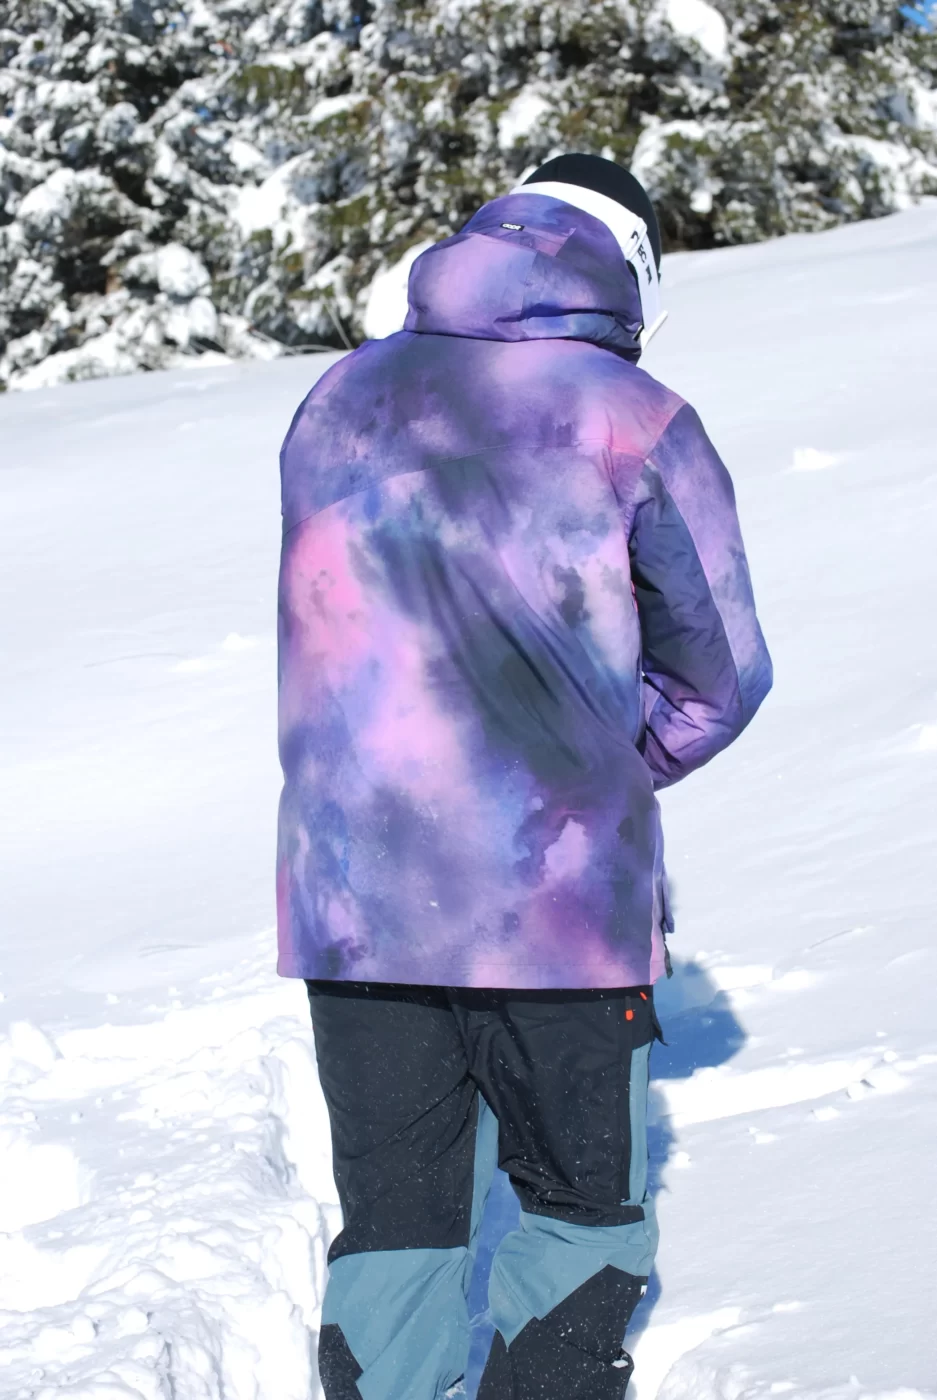 Vue sur le dos de la veste de ski colorée.